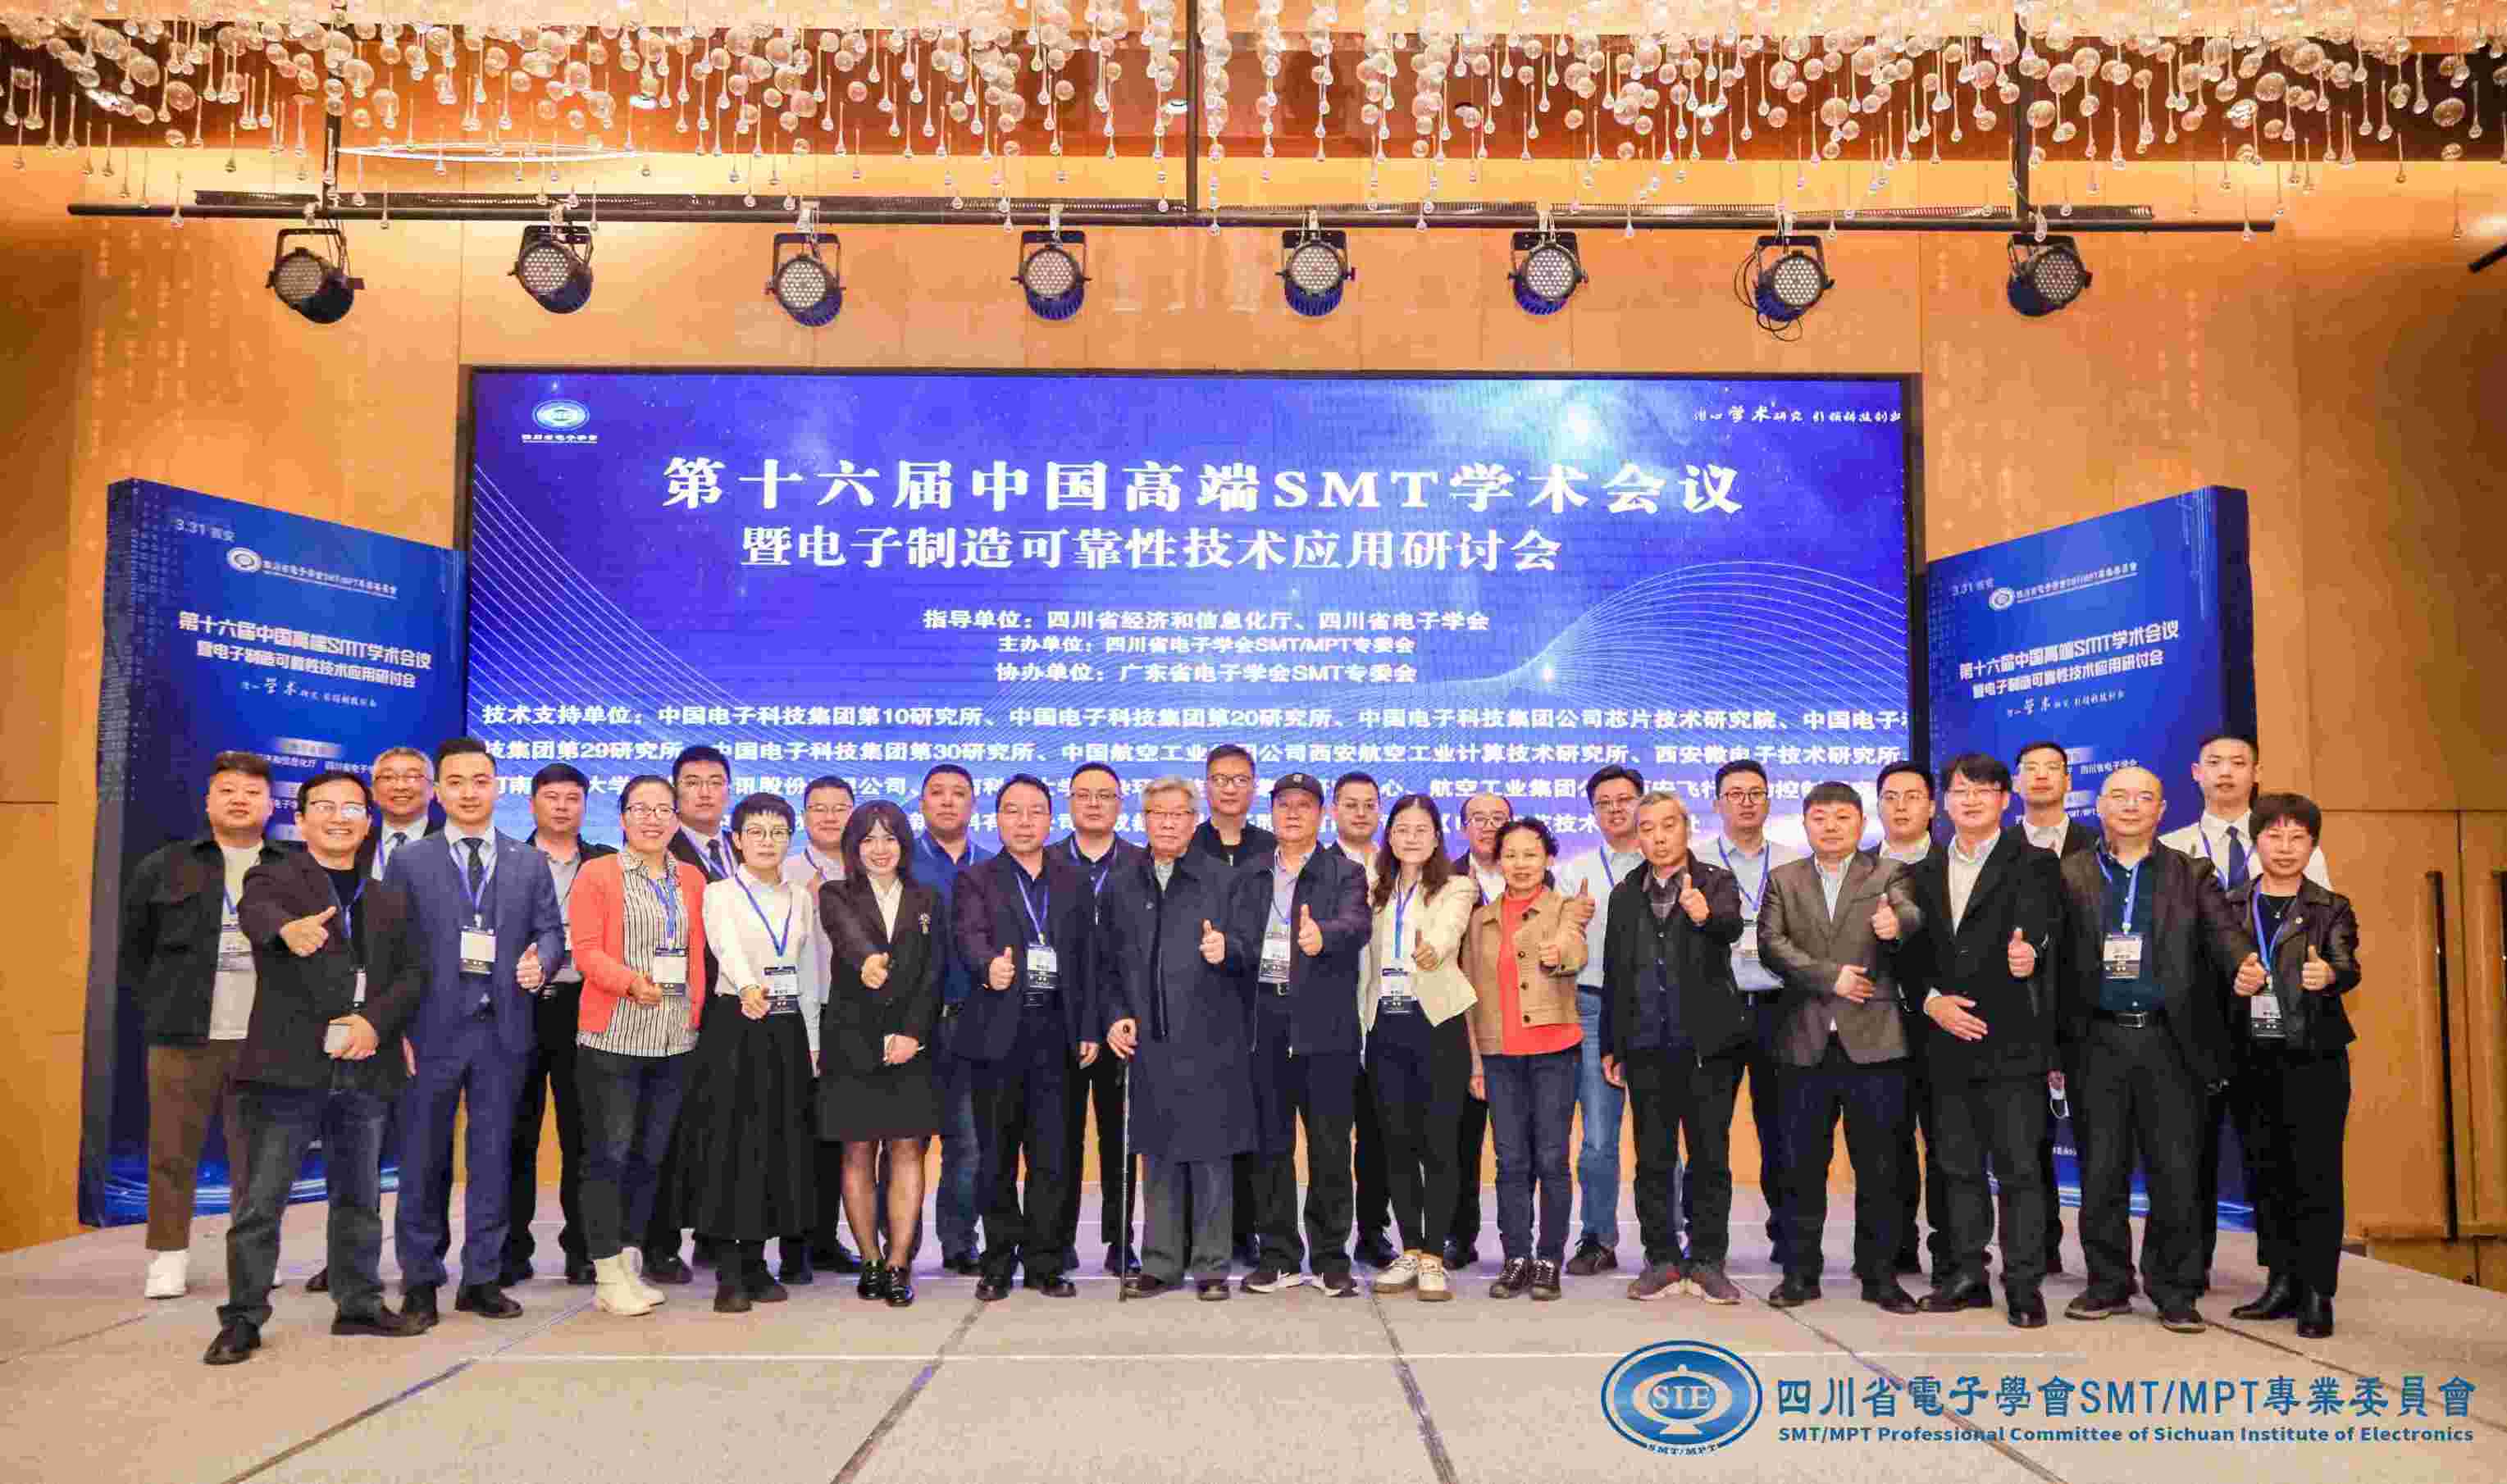 第十六届中国高端SMT学术会议暨电子制造可靠性技术应用研讨会在西安顺利召开